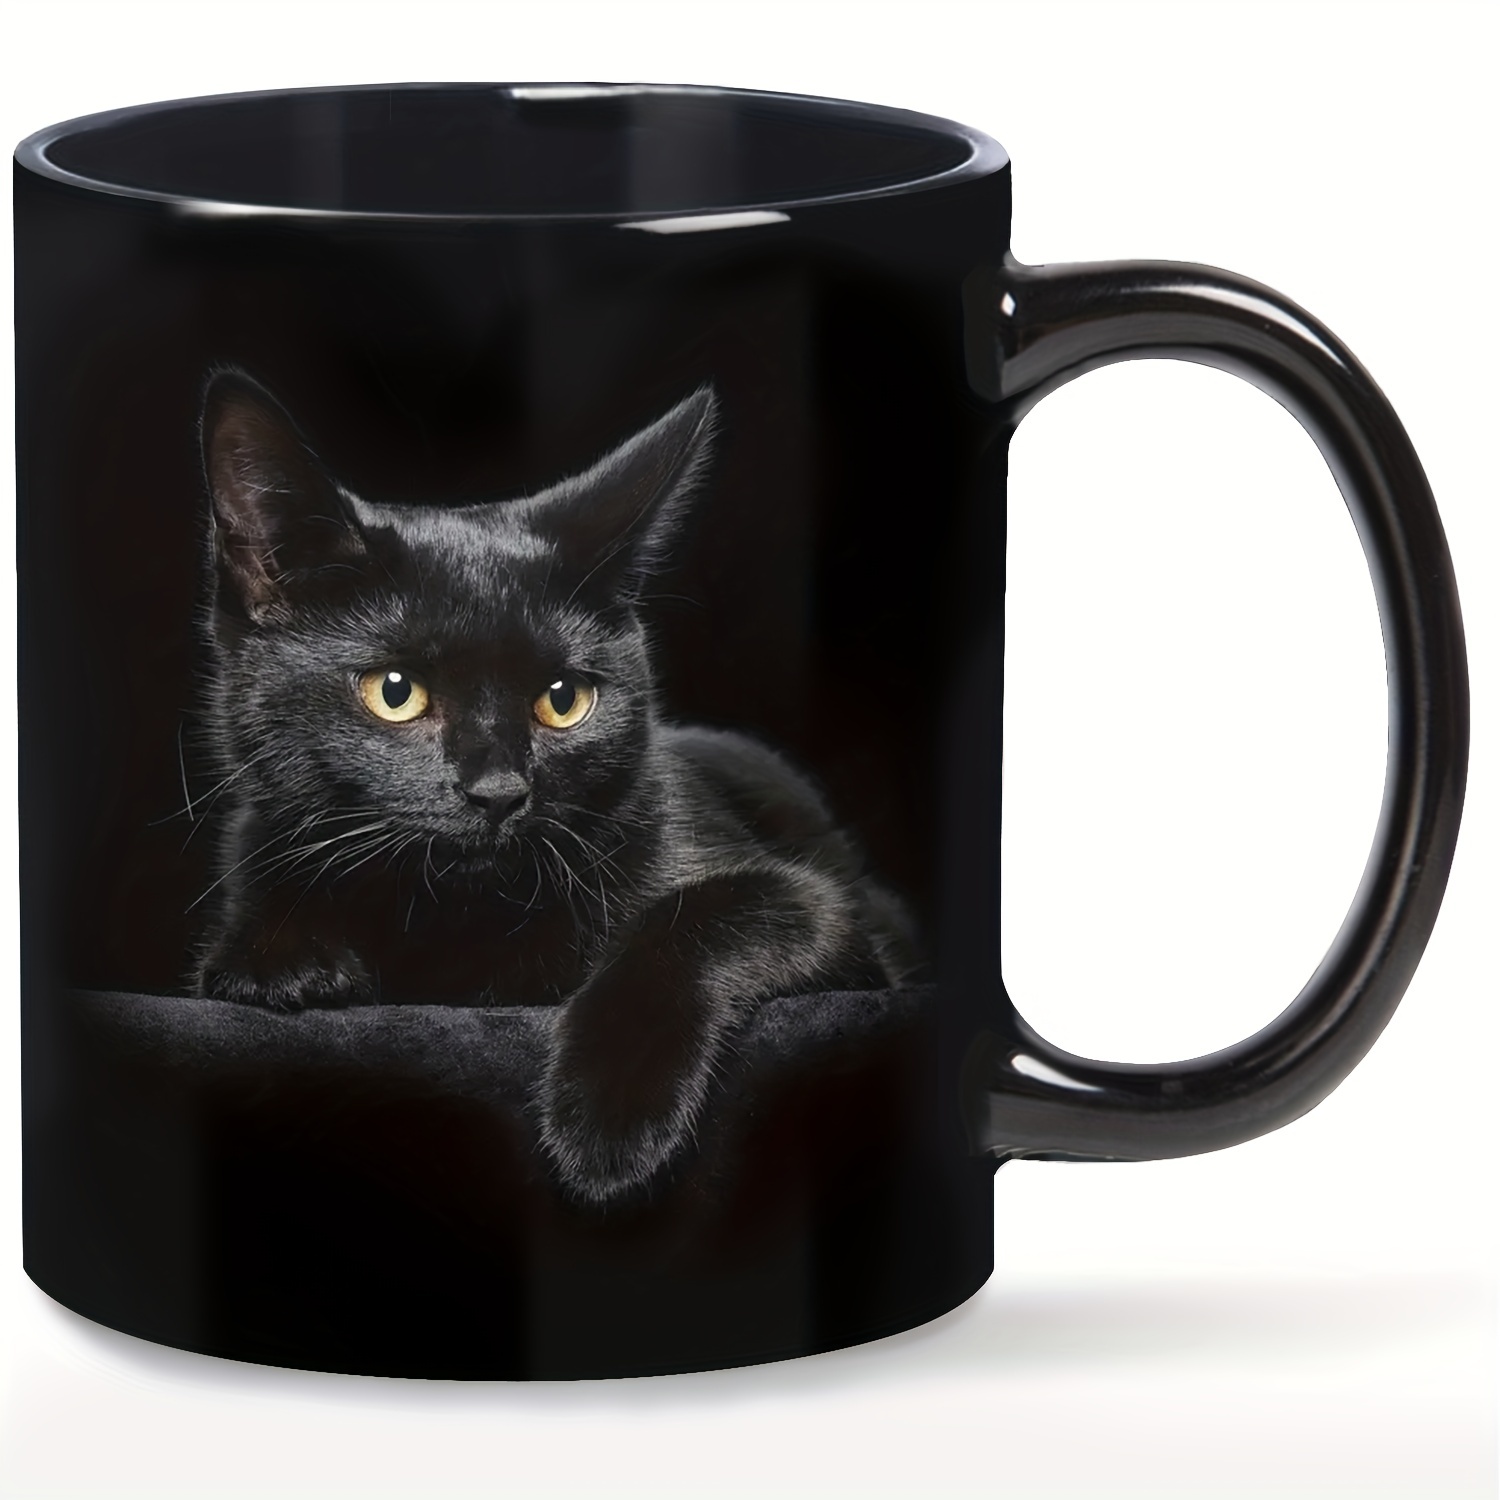 

Tasse à café en céramique avec motif de chat noir, drôle et parfaite pour les amoureux des chats. Idée cadeau mignonne pour un anniversaire ou la Saint-Valentin, ou une surprise pour Halloween (11 oz)